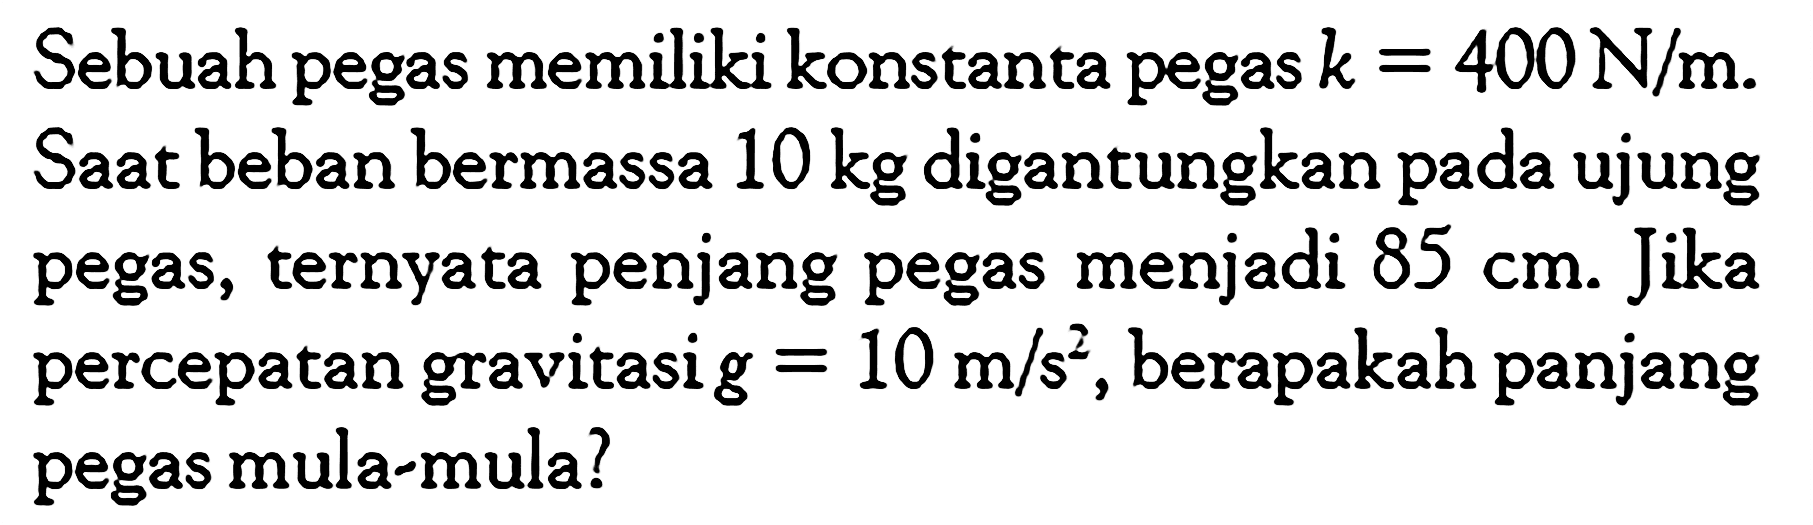 Sebuah pegas memiliki konstanta pegas k = 400 N/m. Saat beban bermassa 10 kg digantungkan pada ujung pegas, ternyata penjang pegas menjadi 85 cm. Jika percepatan gravitasi g = 10 m/s^2, berapakah panjang pegas mula-mula?